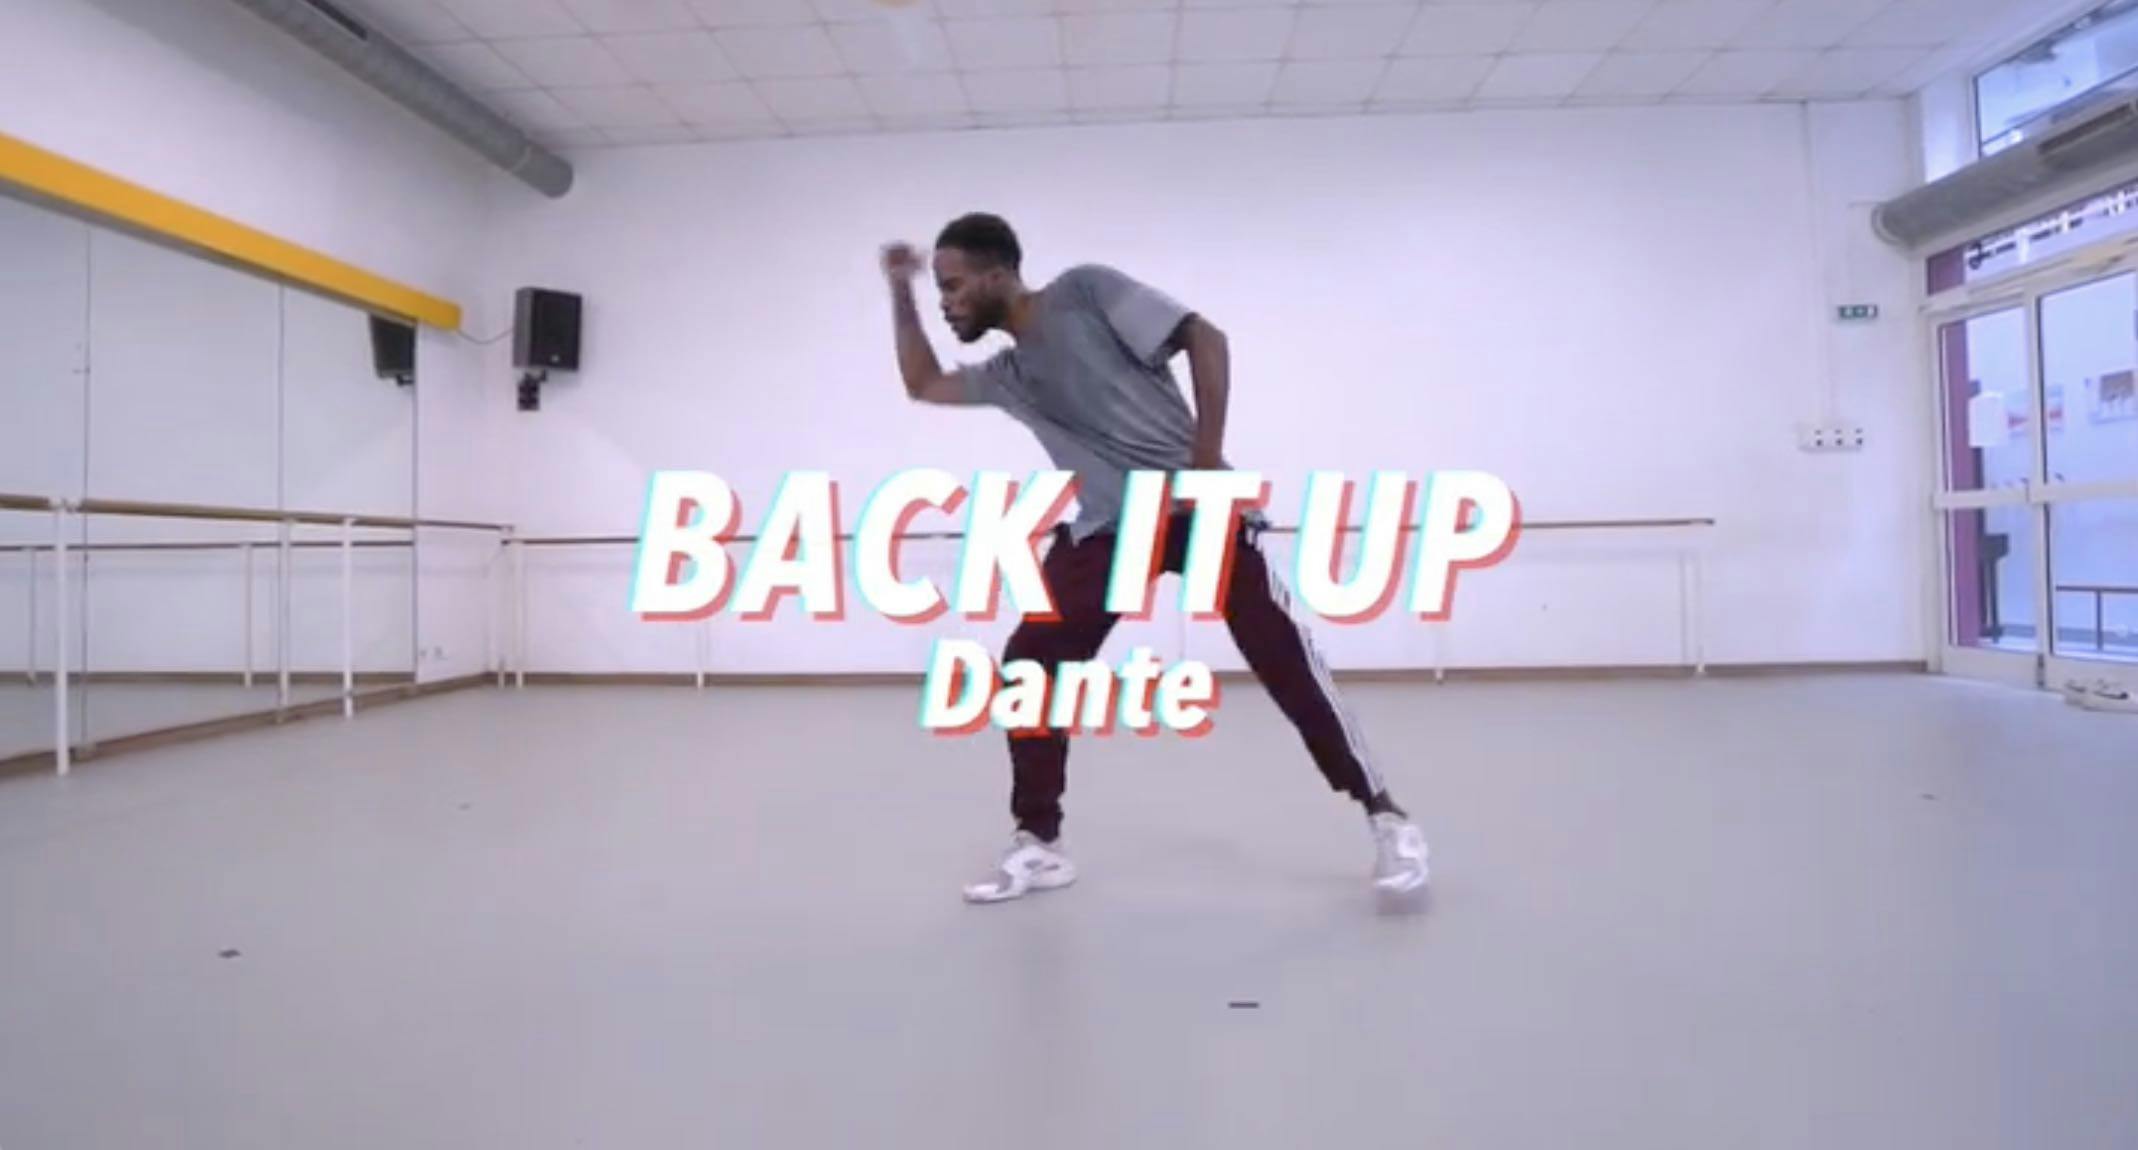 Cours de danse Back it up - Dadju de Dante